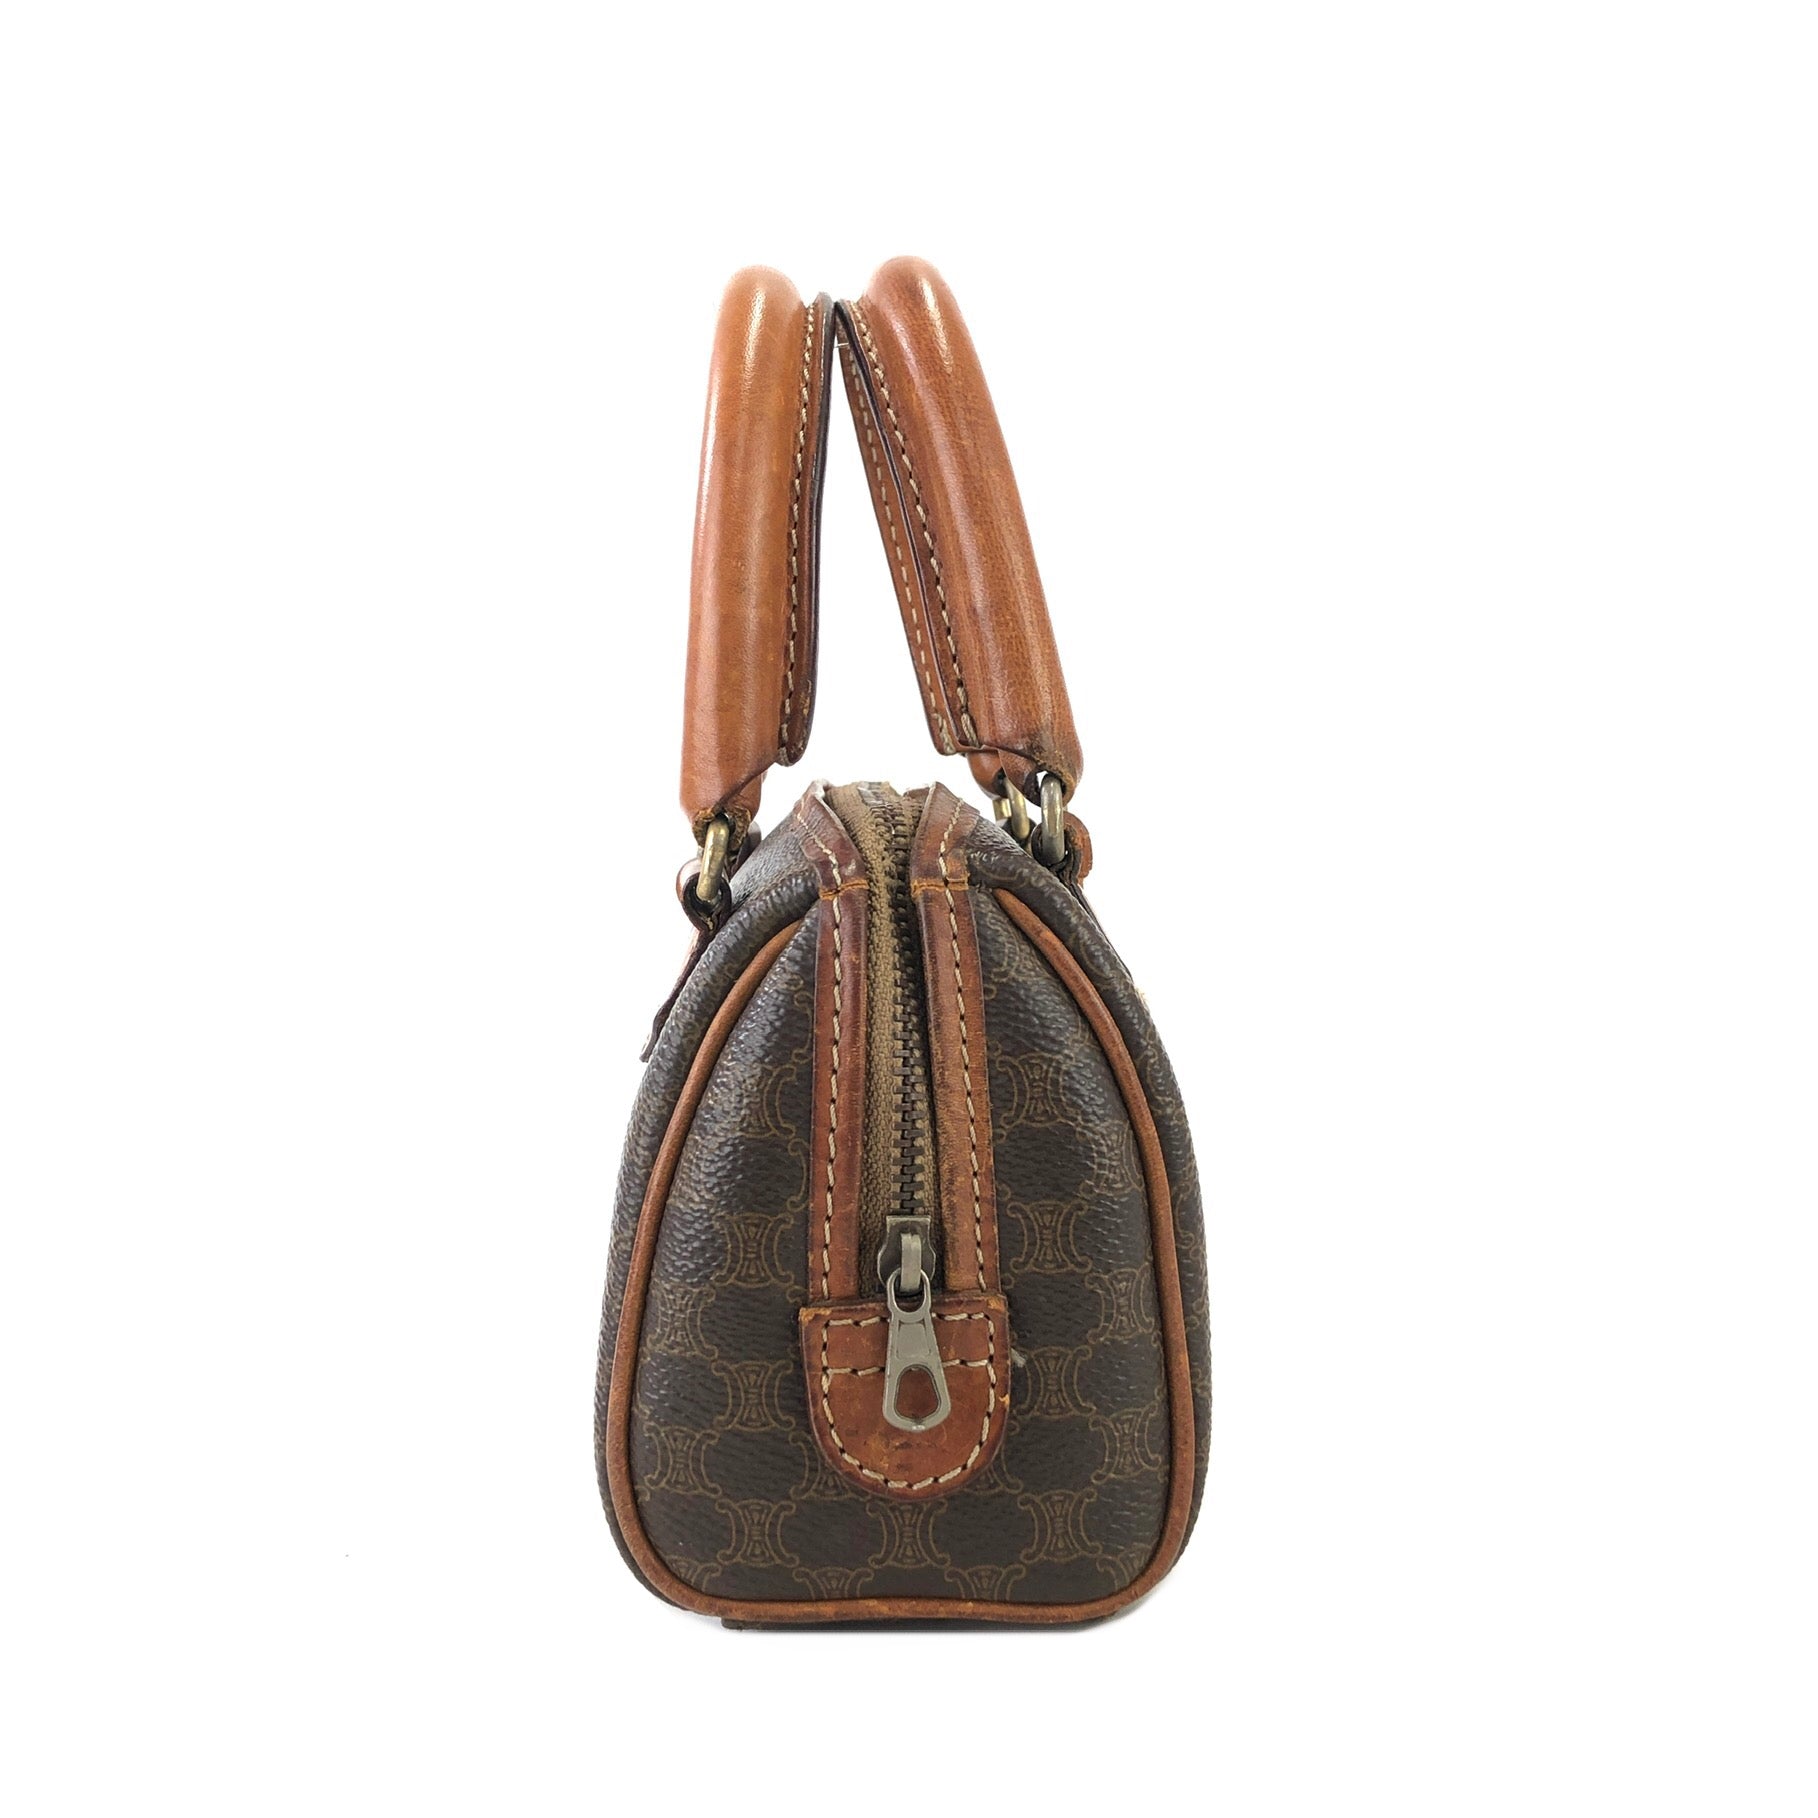 Vintage CELINE Mini Duffle Bag Speedy Style Handbag With 